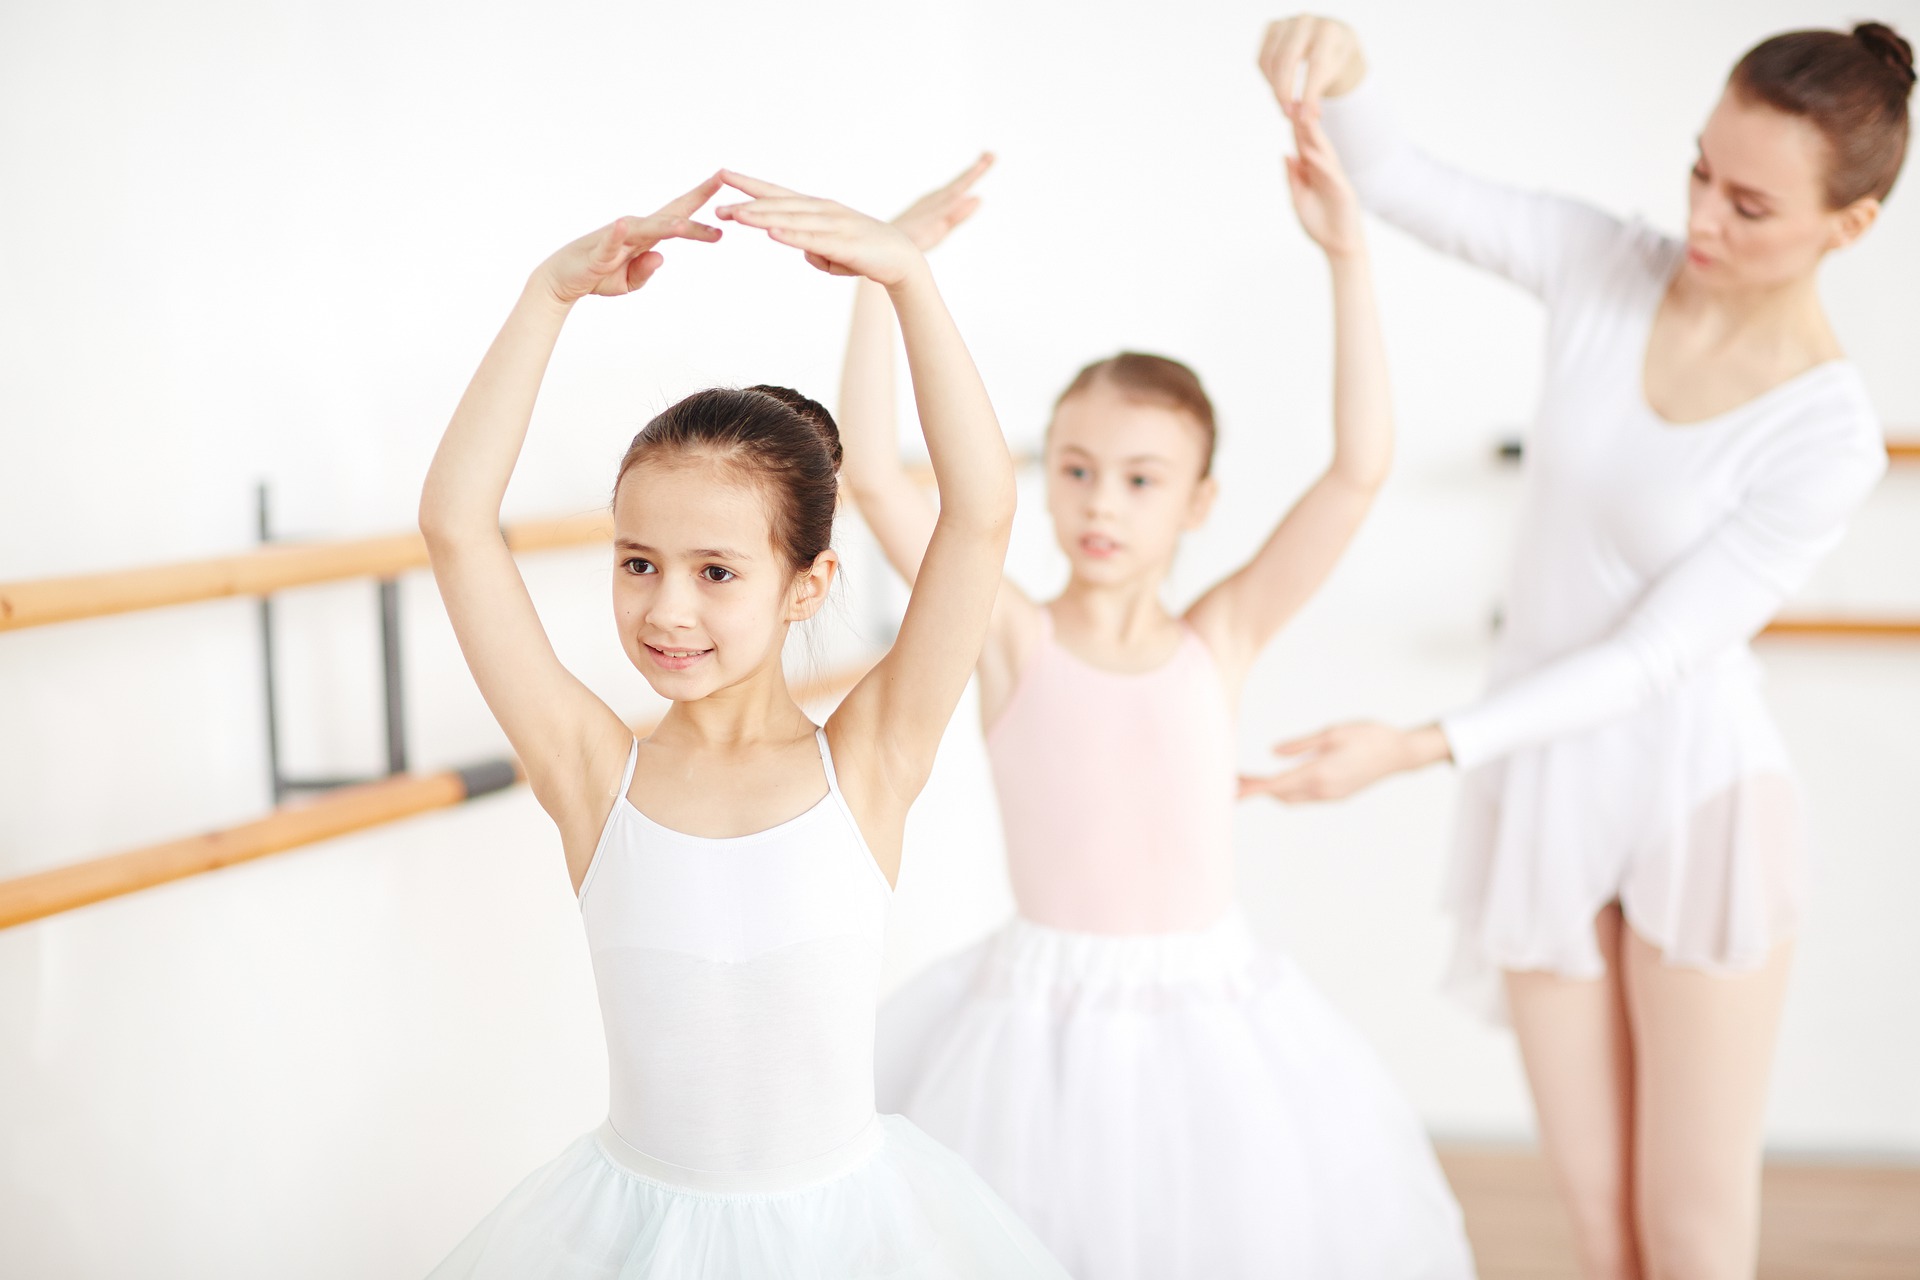 Balet / taniec jazzowy i współczesny (6-9 lat)